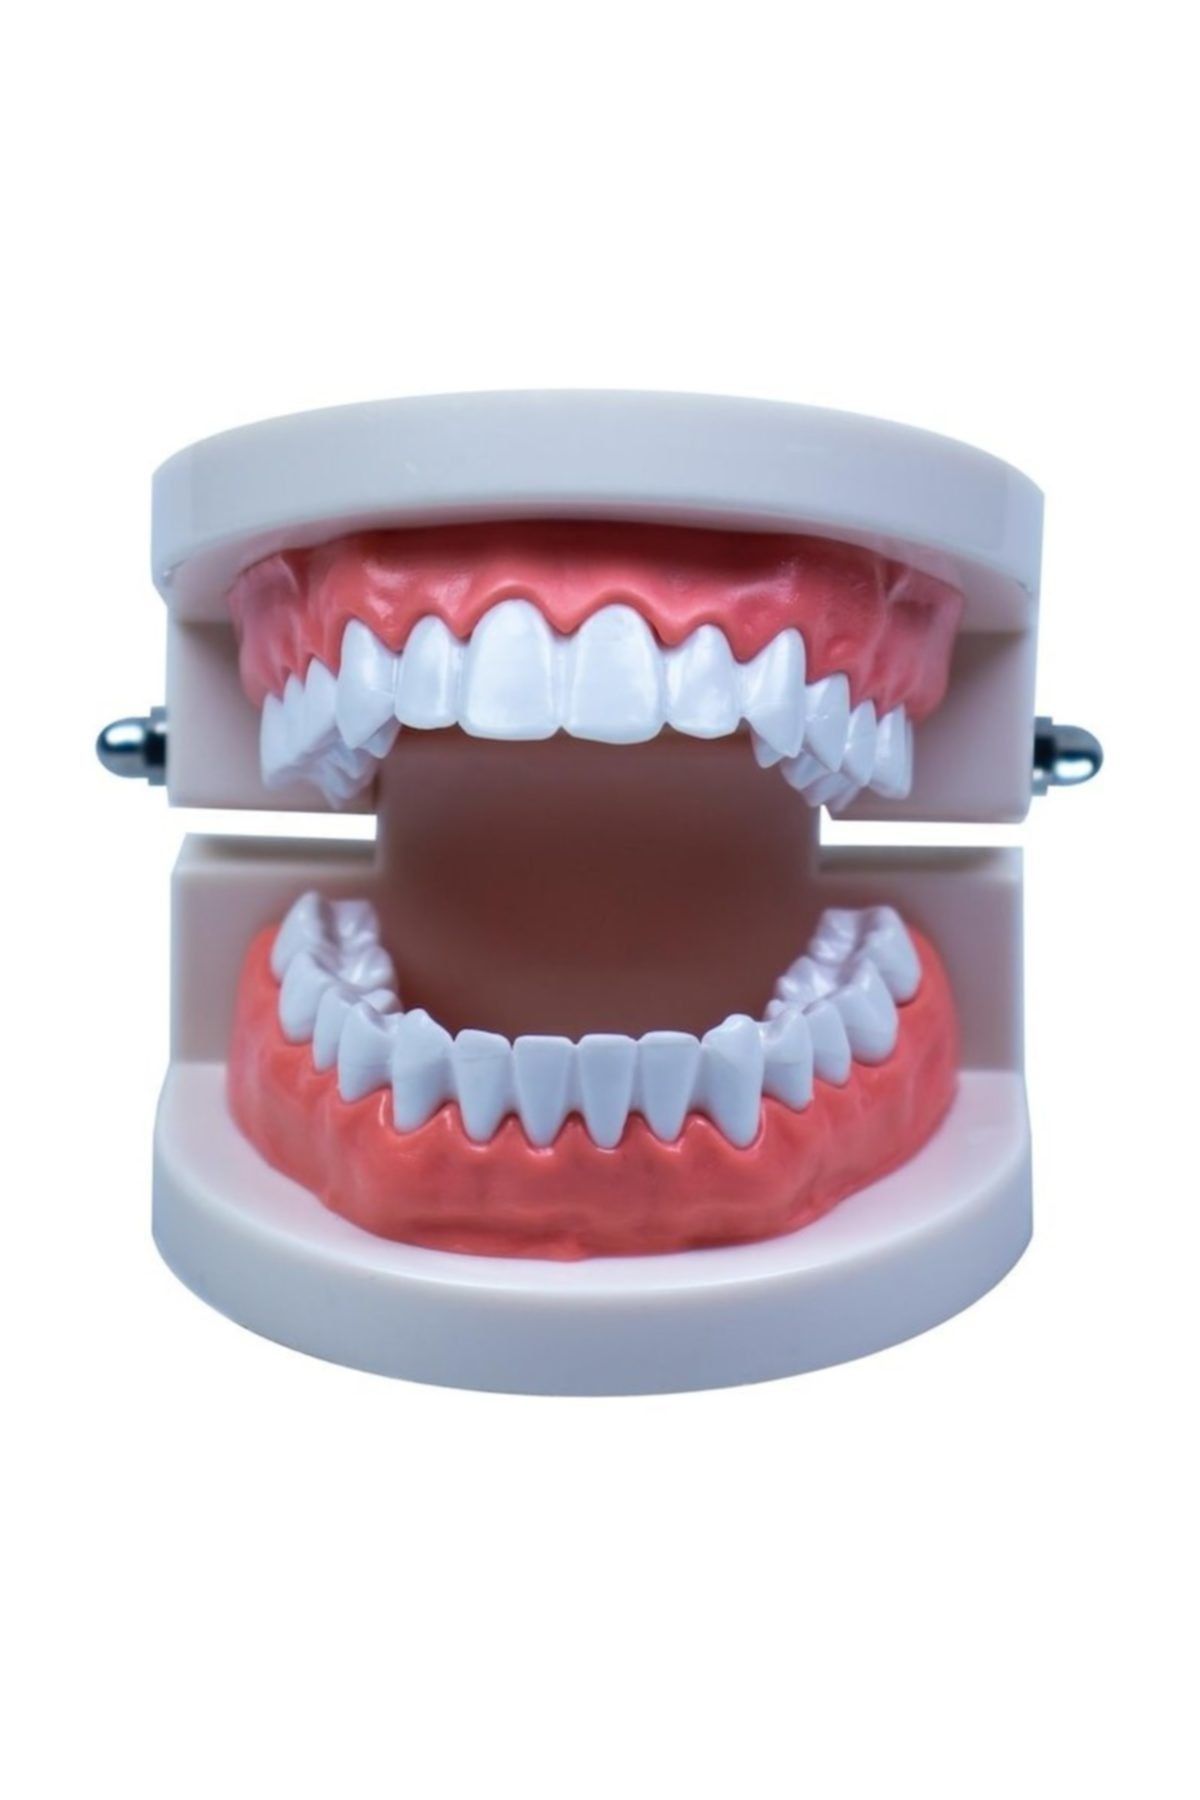 RoseRoi Insan Anatomisi Diş Çene Modeli Eğitici Maket Fen Ve Biyoloji Dersleri Deney Maketi